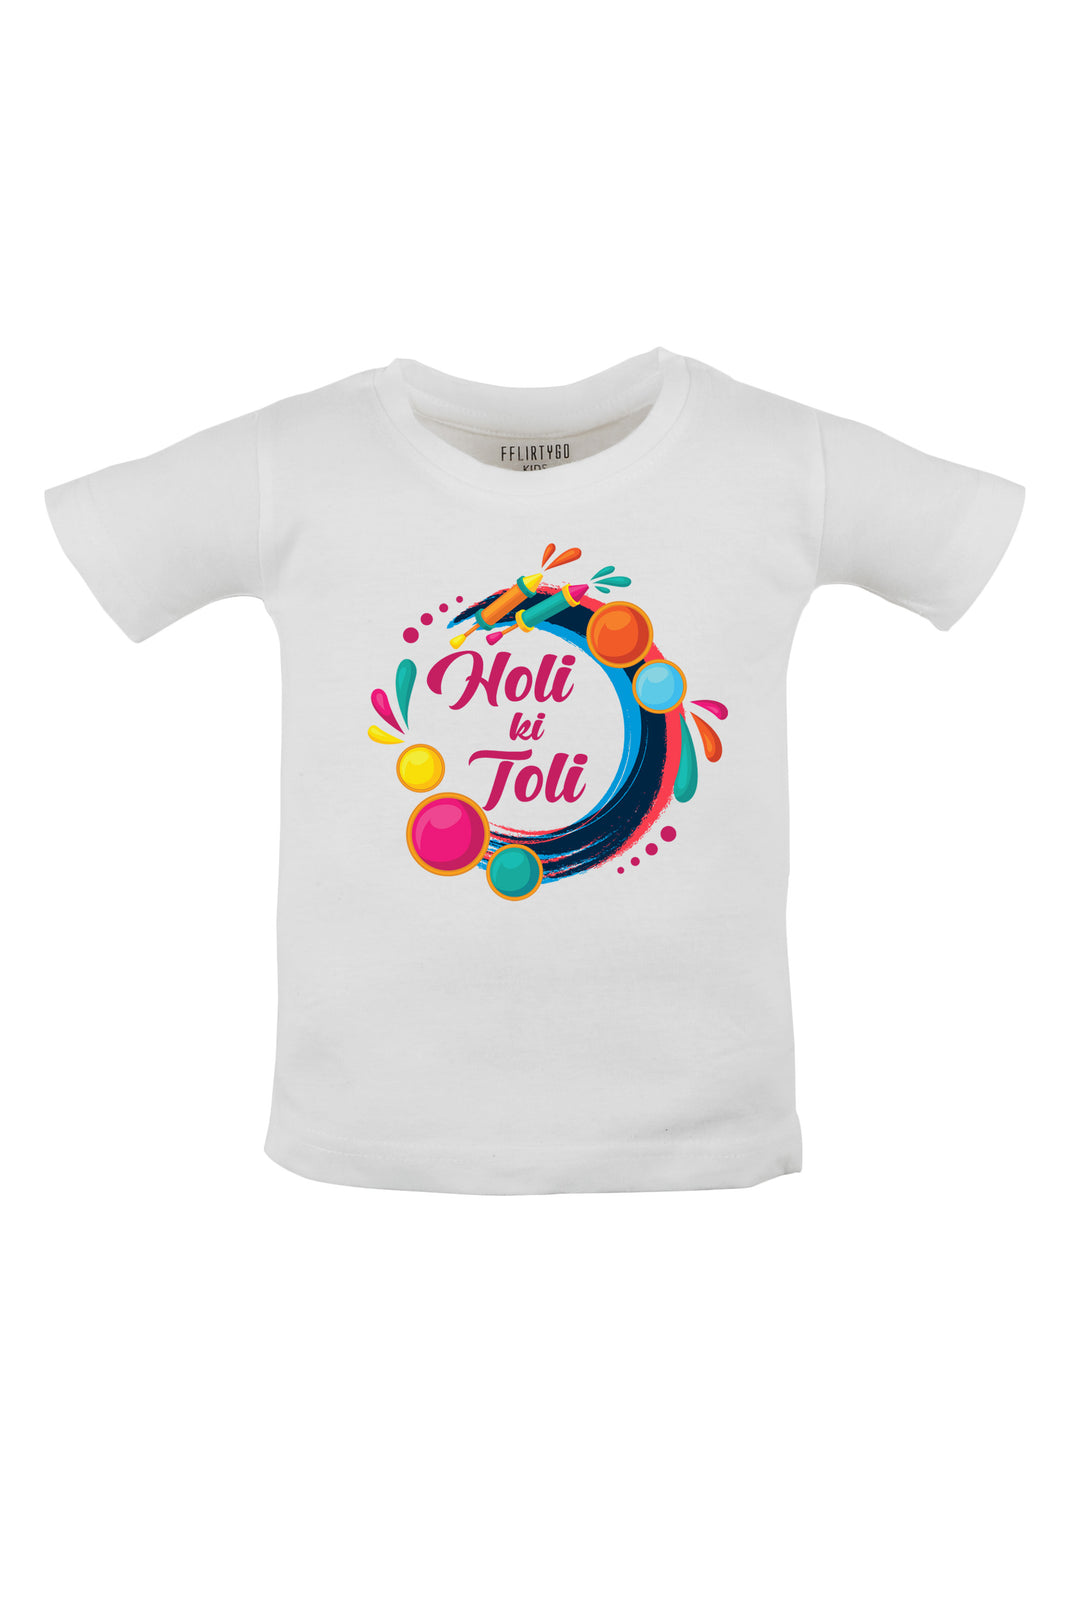 Holi Ki Toli Kids T Shirt